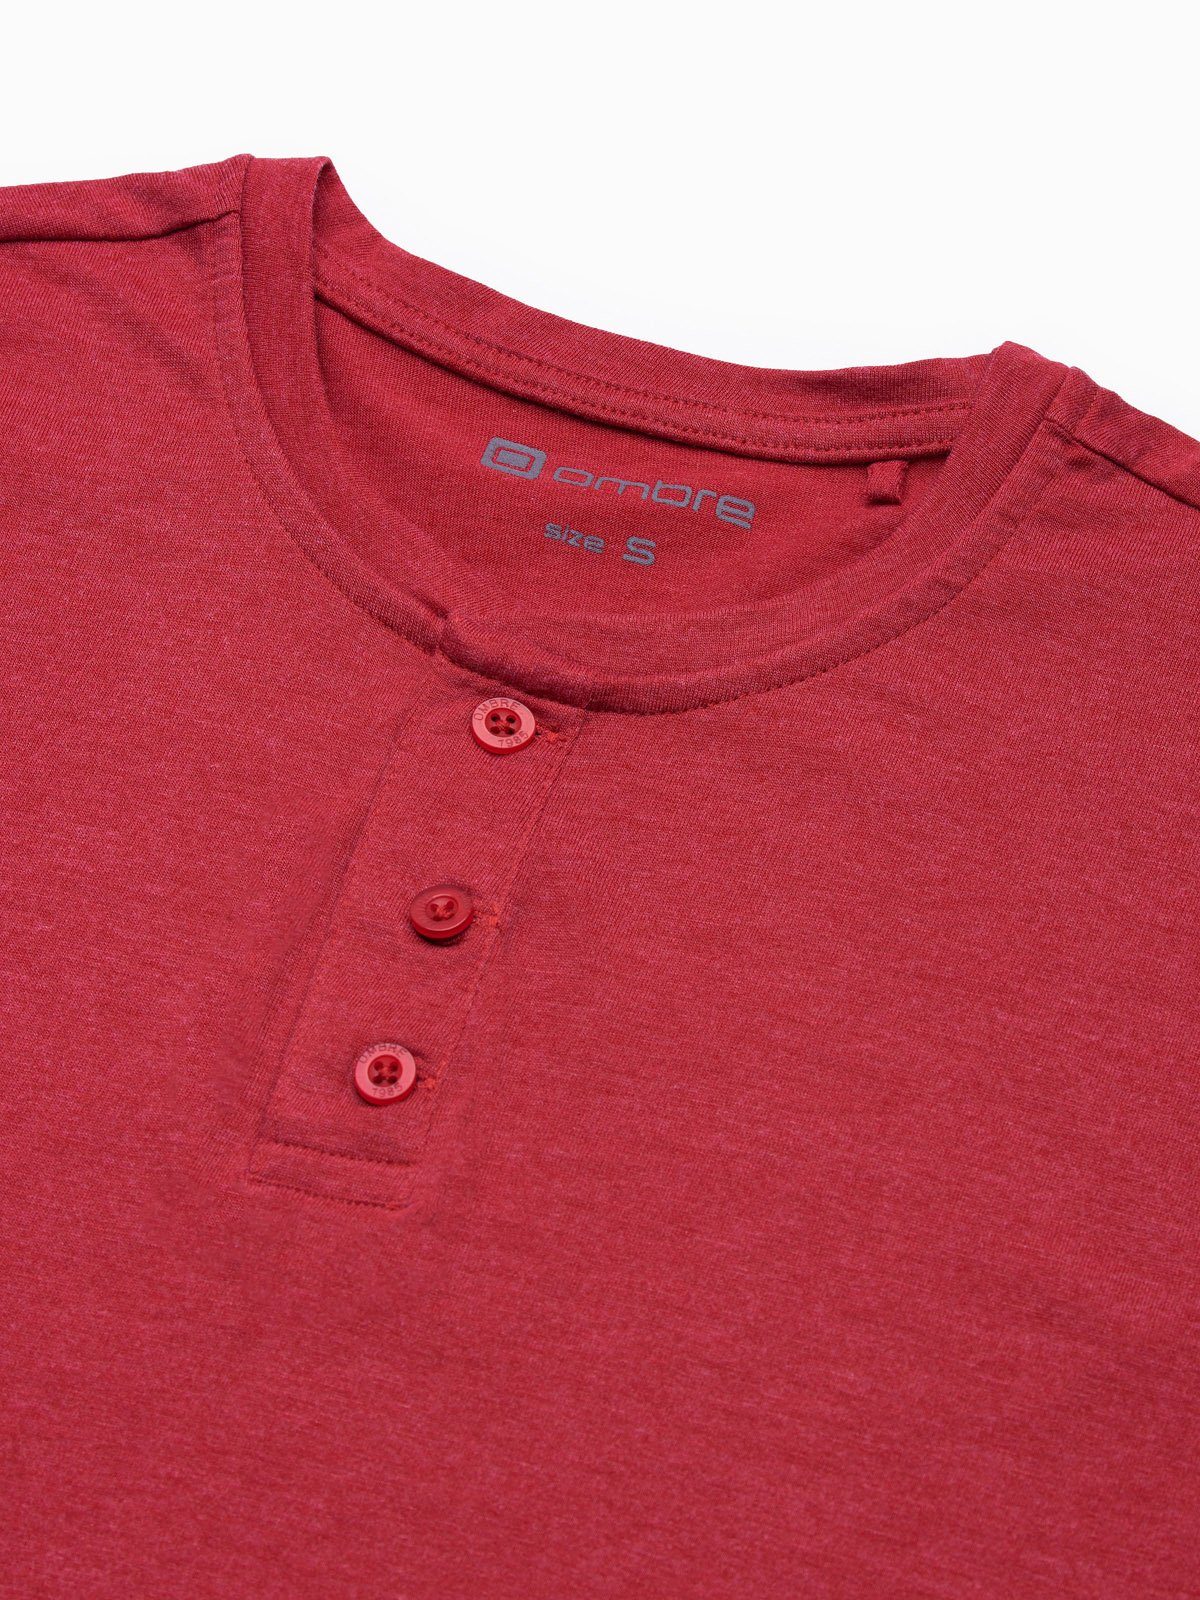 OMBRE T-Shirt Einfarbiges Herren-T-Shirt S1390 M rot - meliert